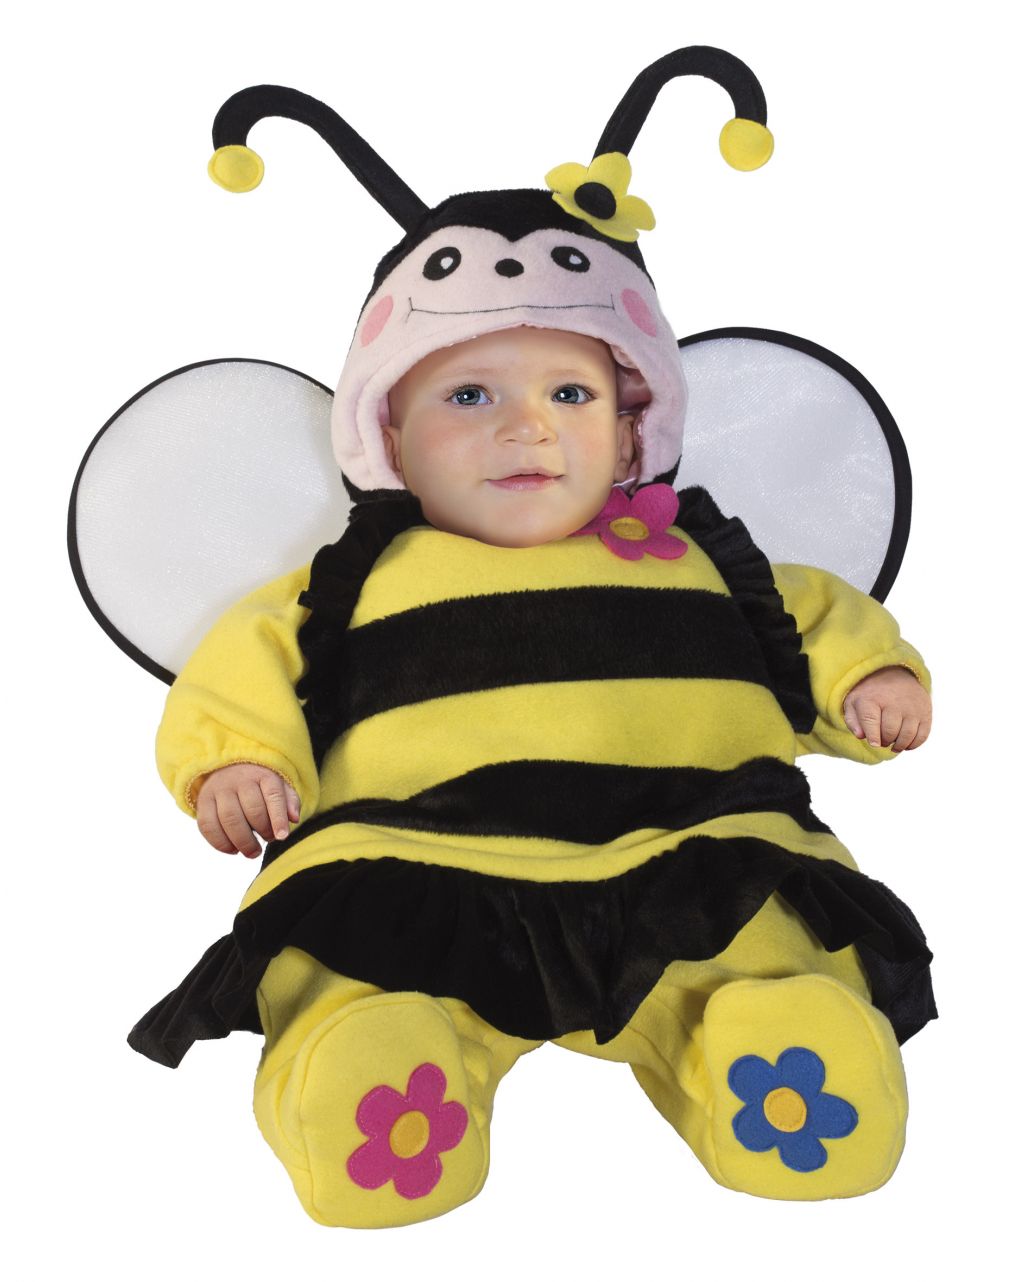 βρεφική αποκριάτικη στολή μελισσούλα 3-6 μηνών - Carnaval Queen